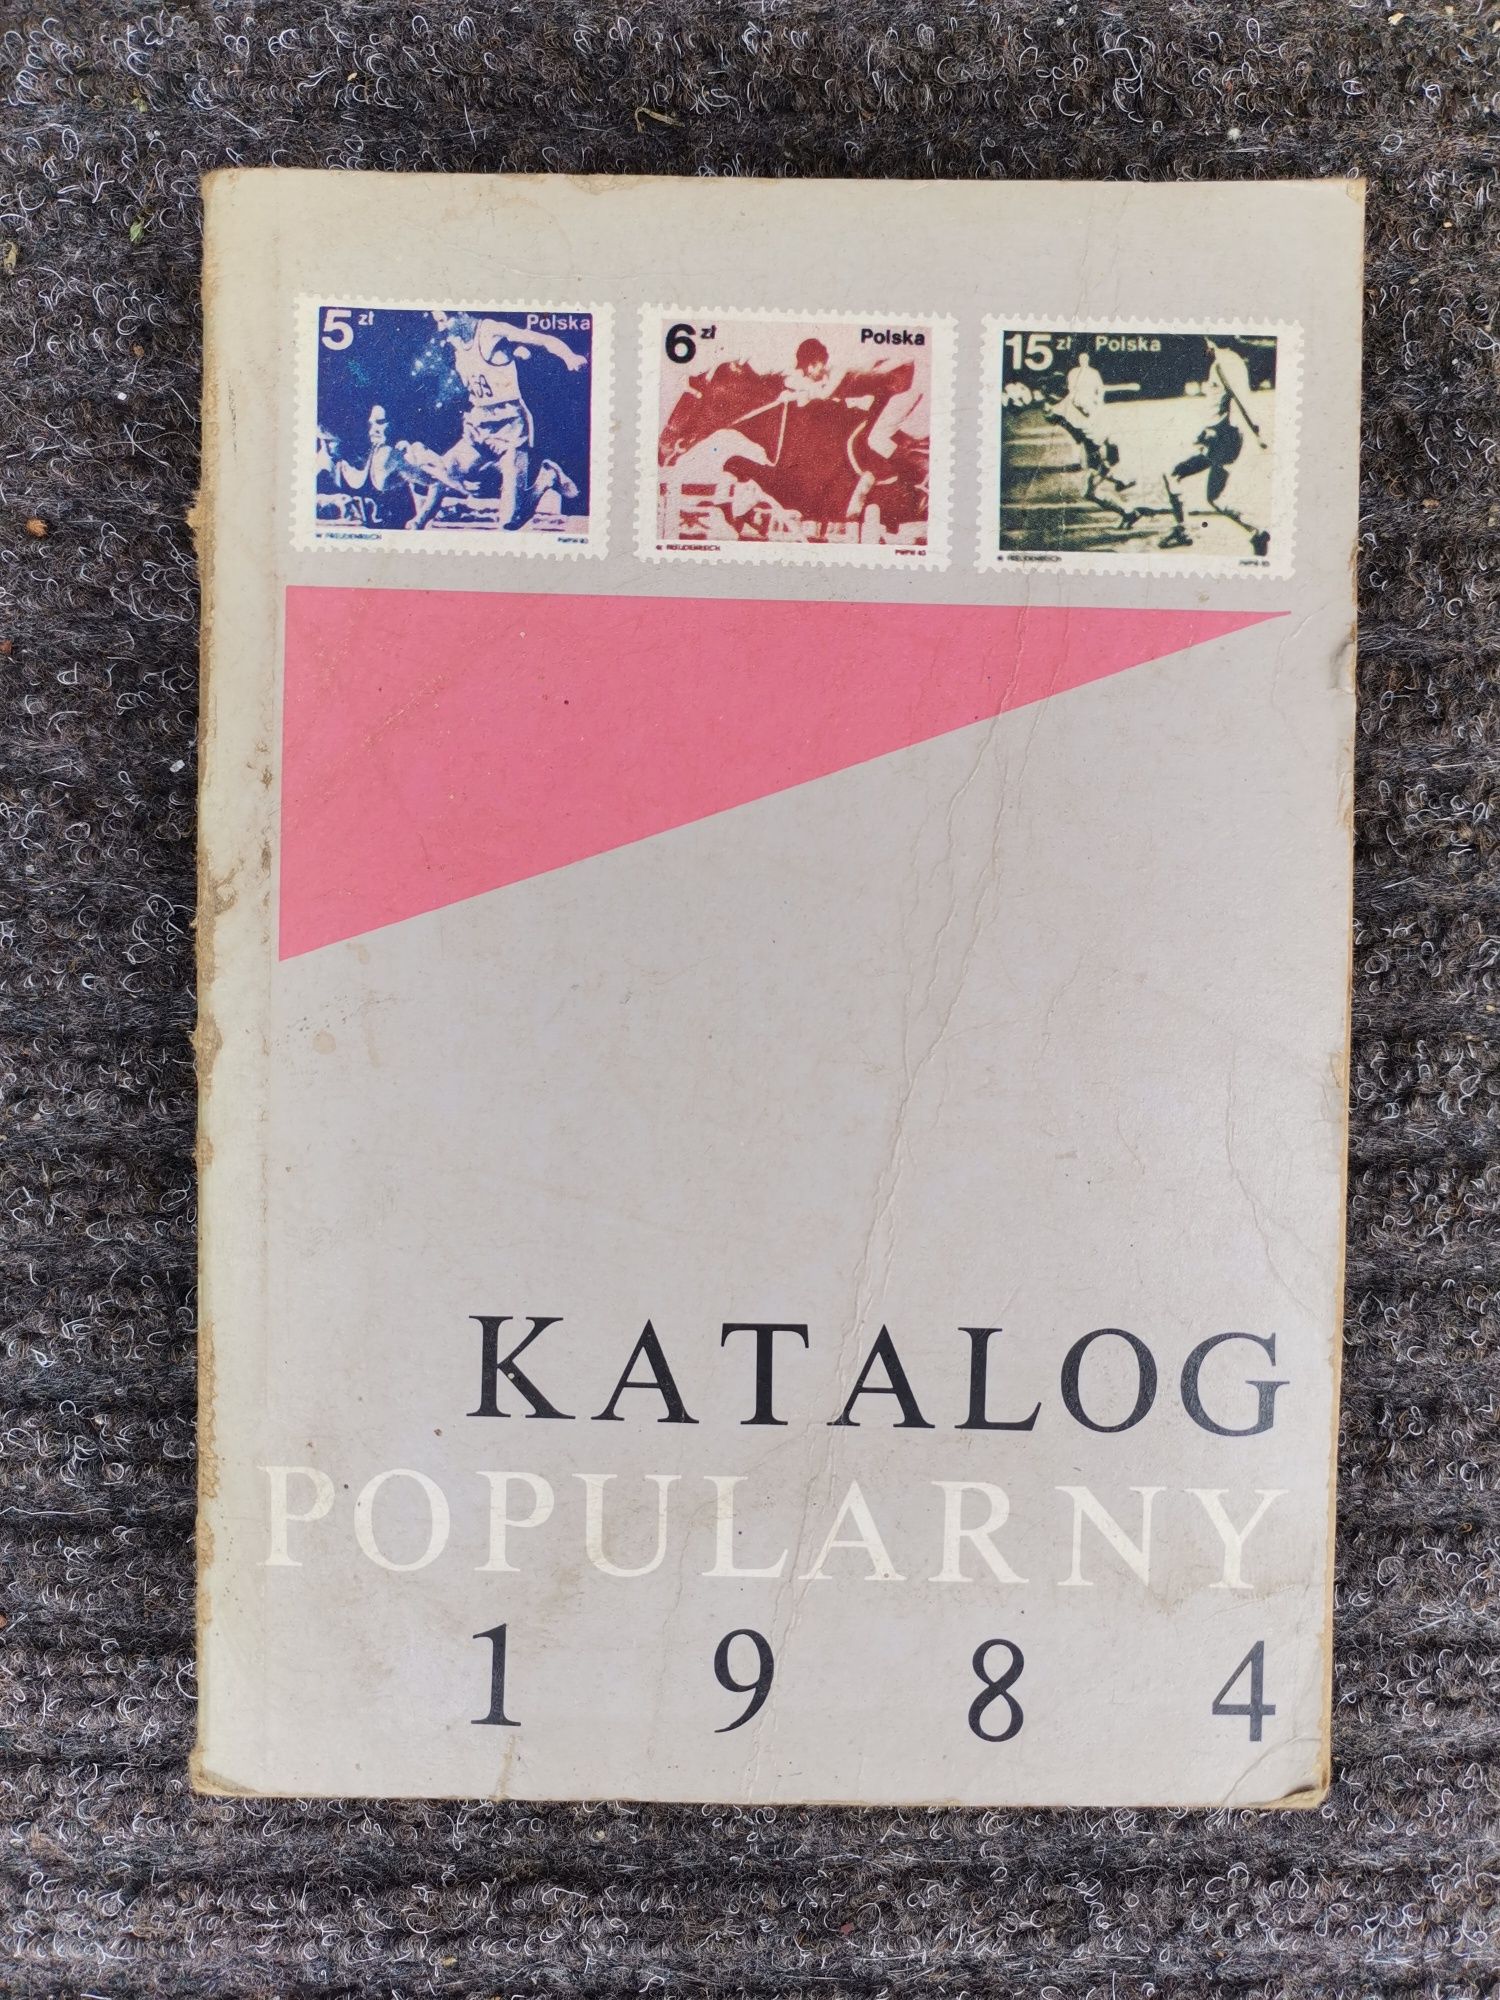 Katalog popularny znaczków 1982